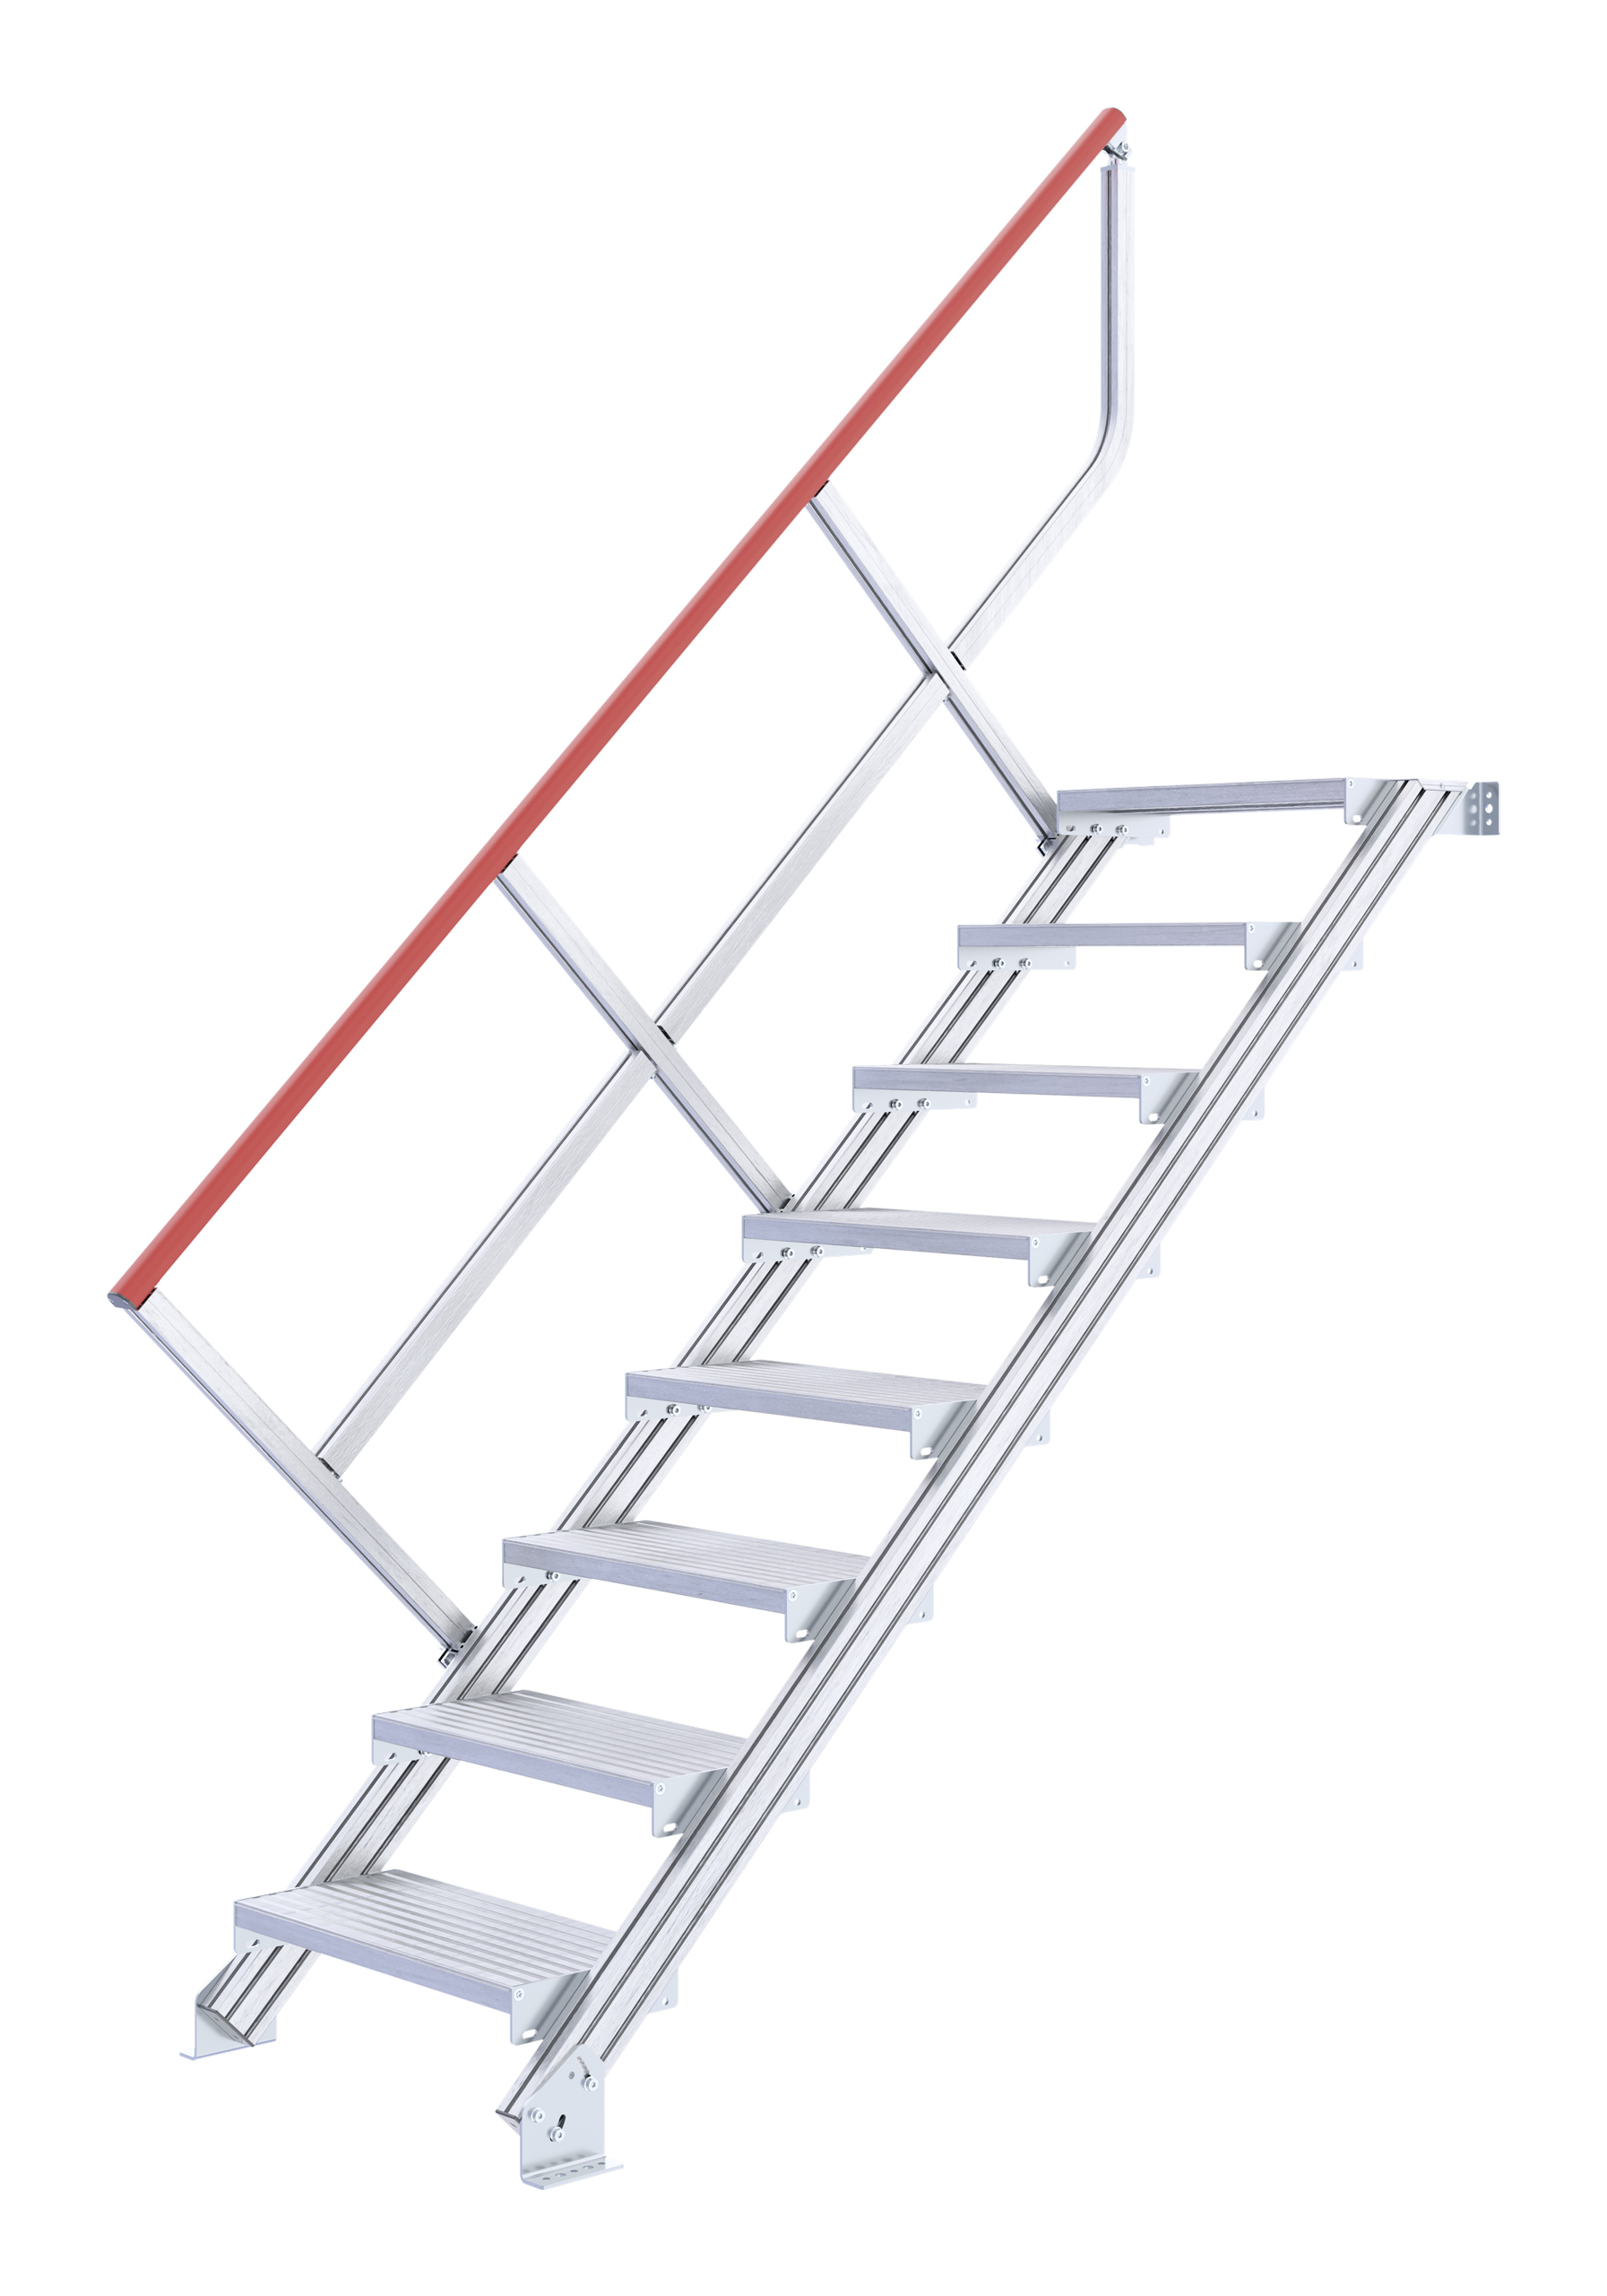 Treppe stationär ohne Podest, Treppenneigung 45°, Stufenbreite 800 mm - 4 Stufen